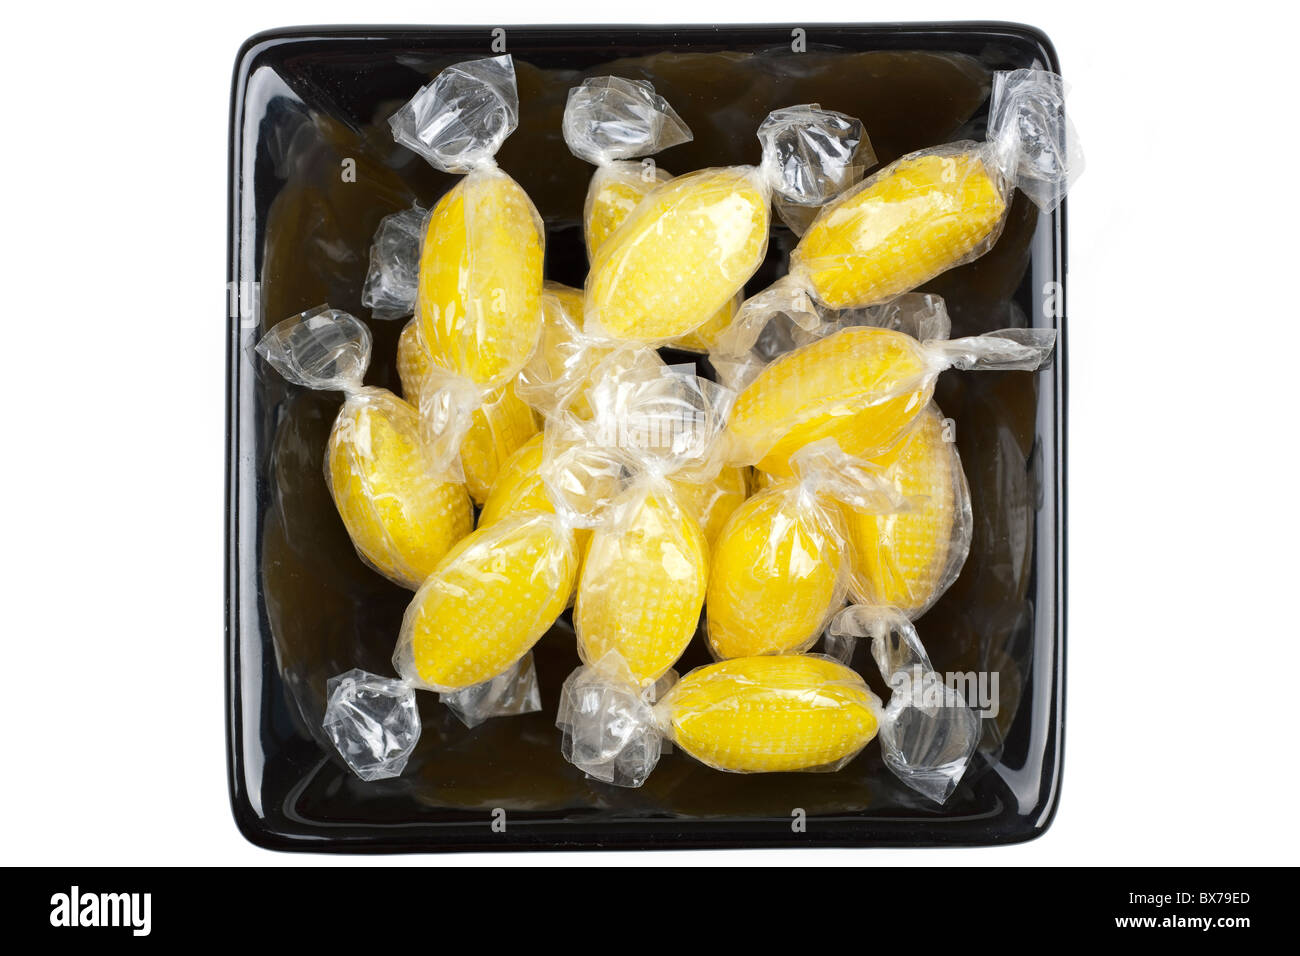 Black ceramic server dish full of Sherbet lemons sweets Stock Photo